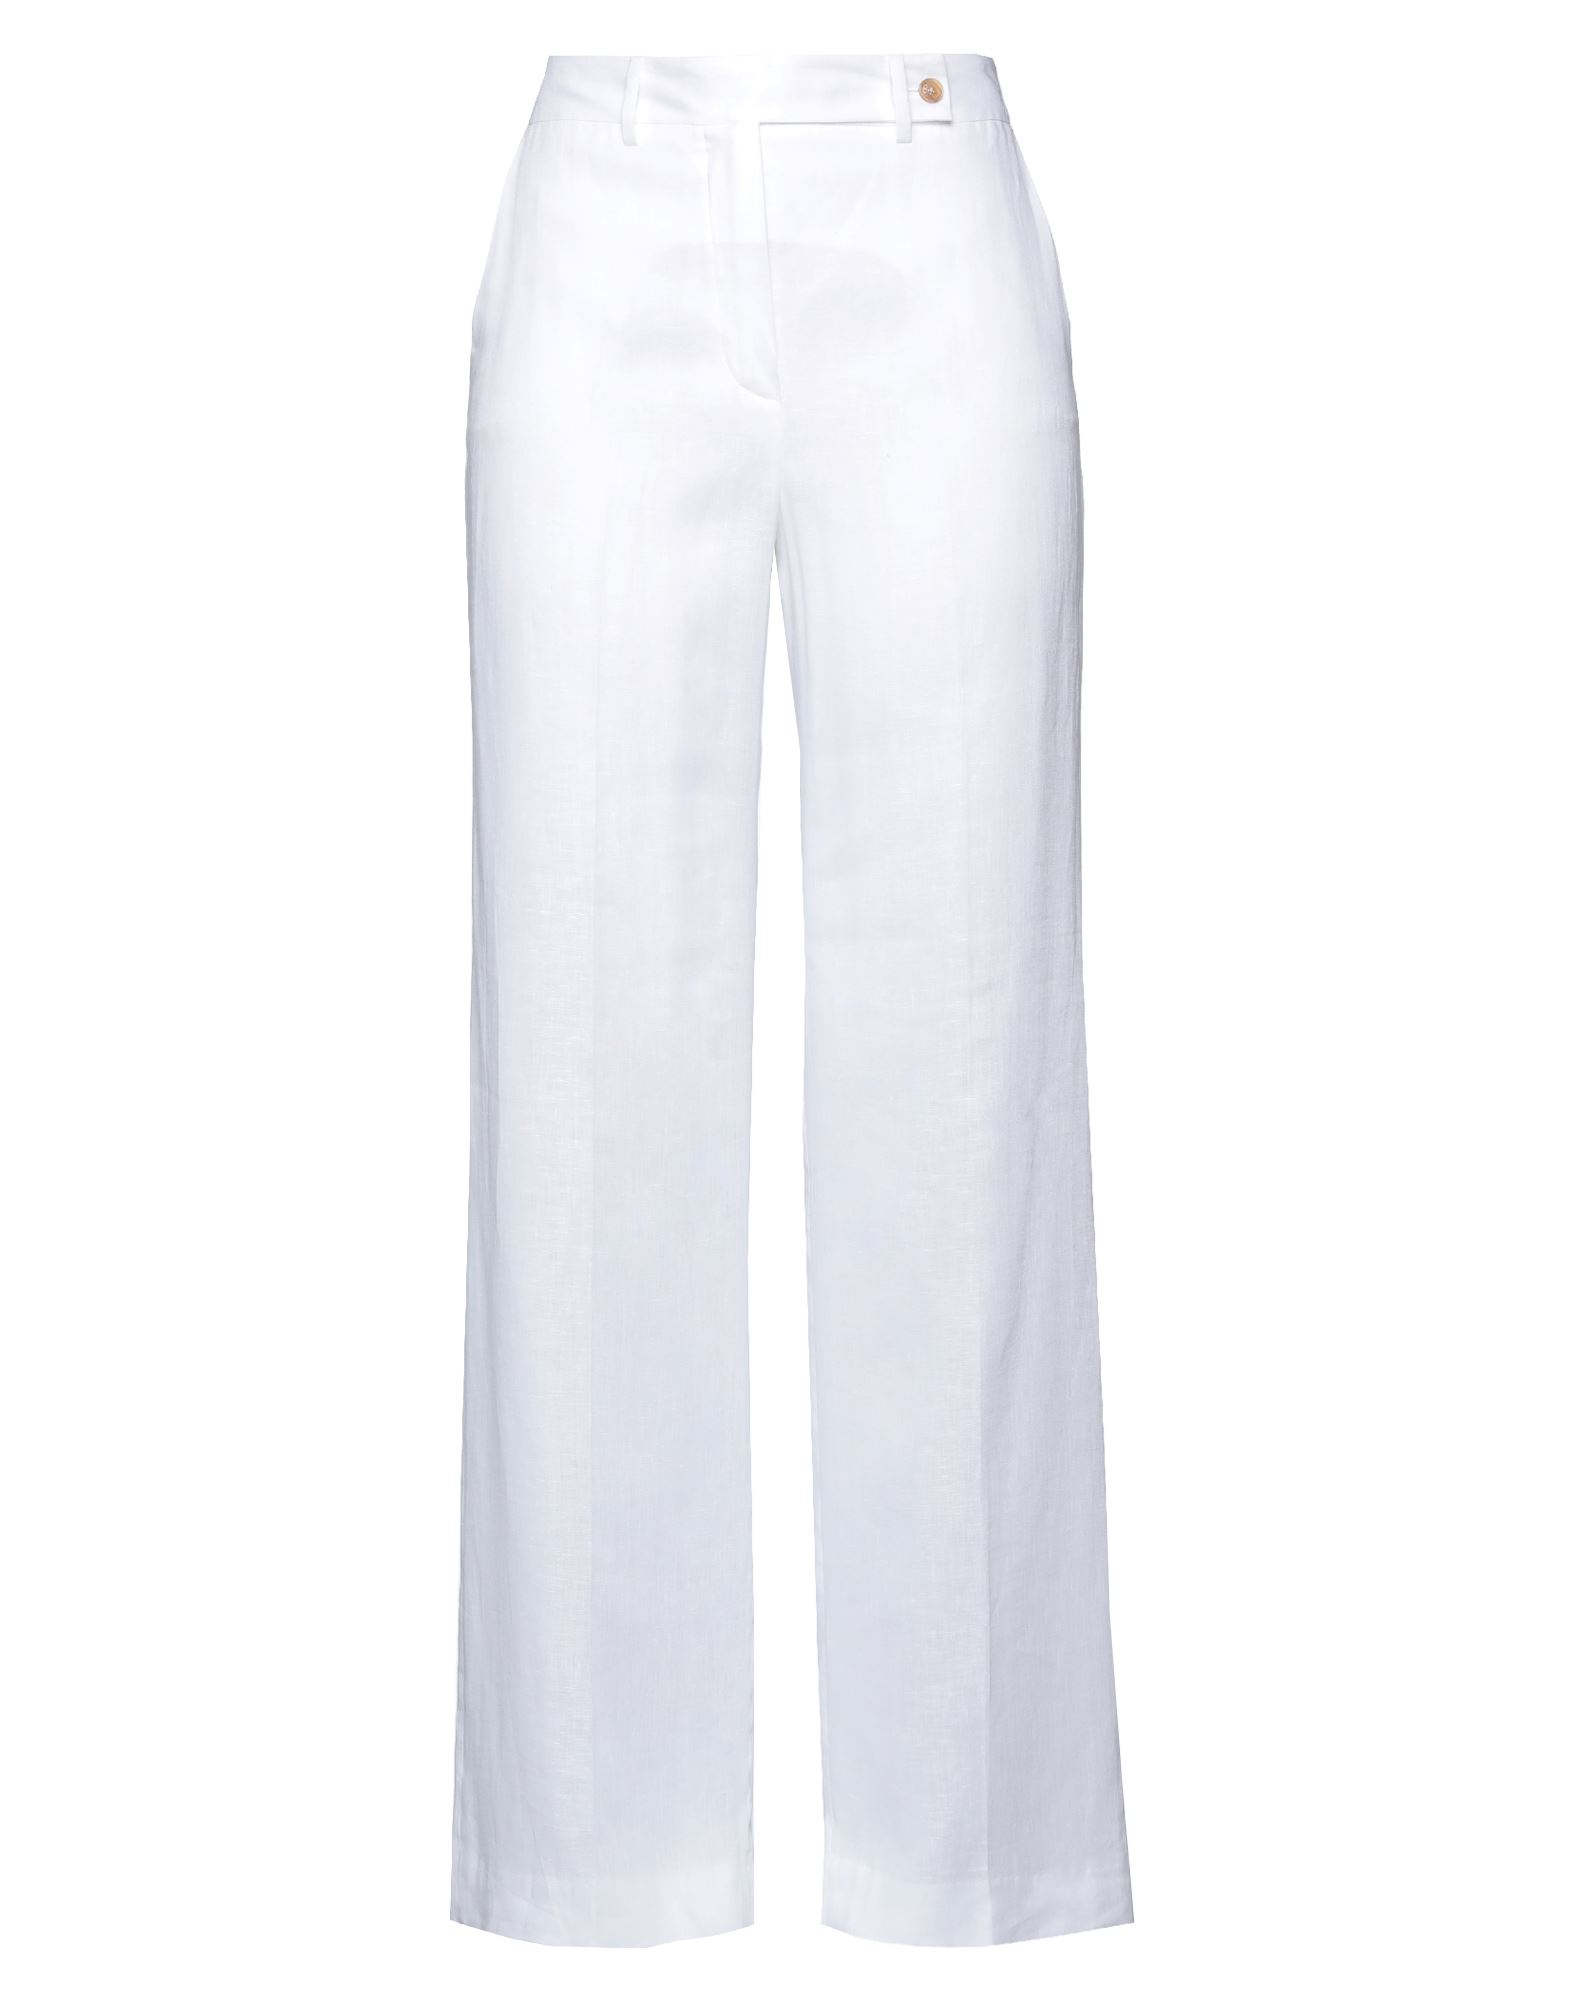 Shop Kiton Woman Pants White Size 6 Linen